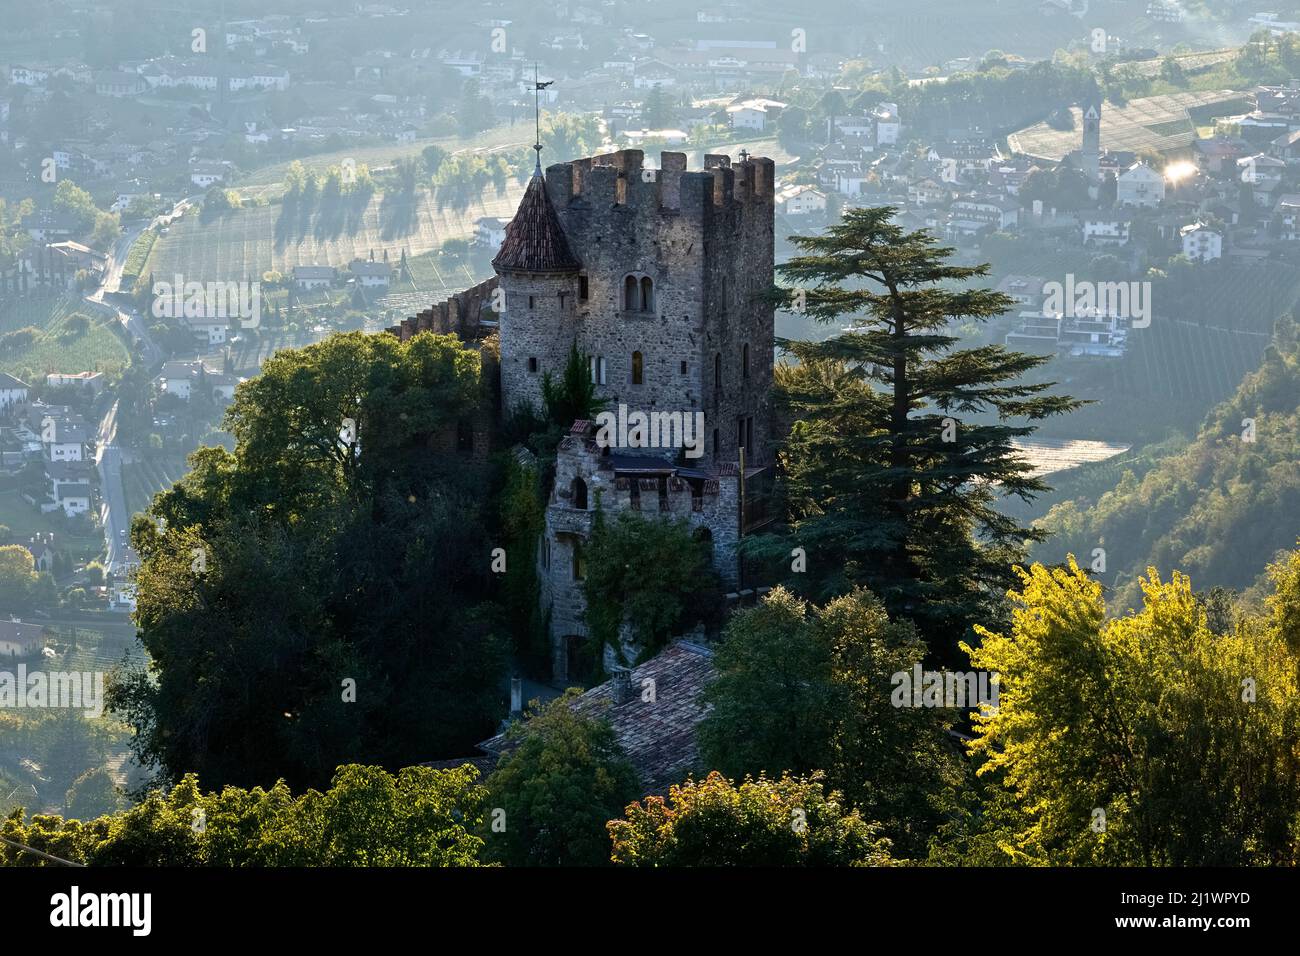 Castel Fontana/Brunnenburg ha origini medievali ma fu ricostruito in stile neo-gotico nel XX secolo. Tirolo/Tirolo, Alto adige, Italia. Foto Stock